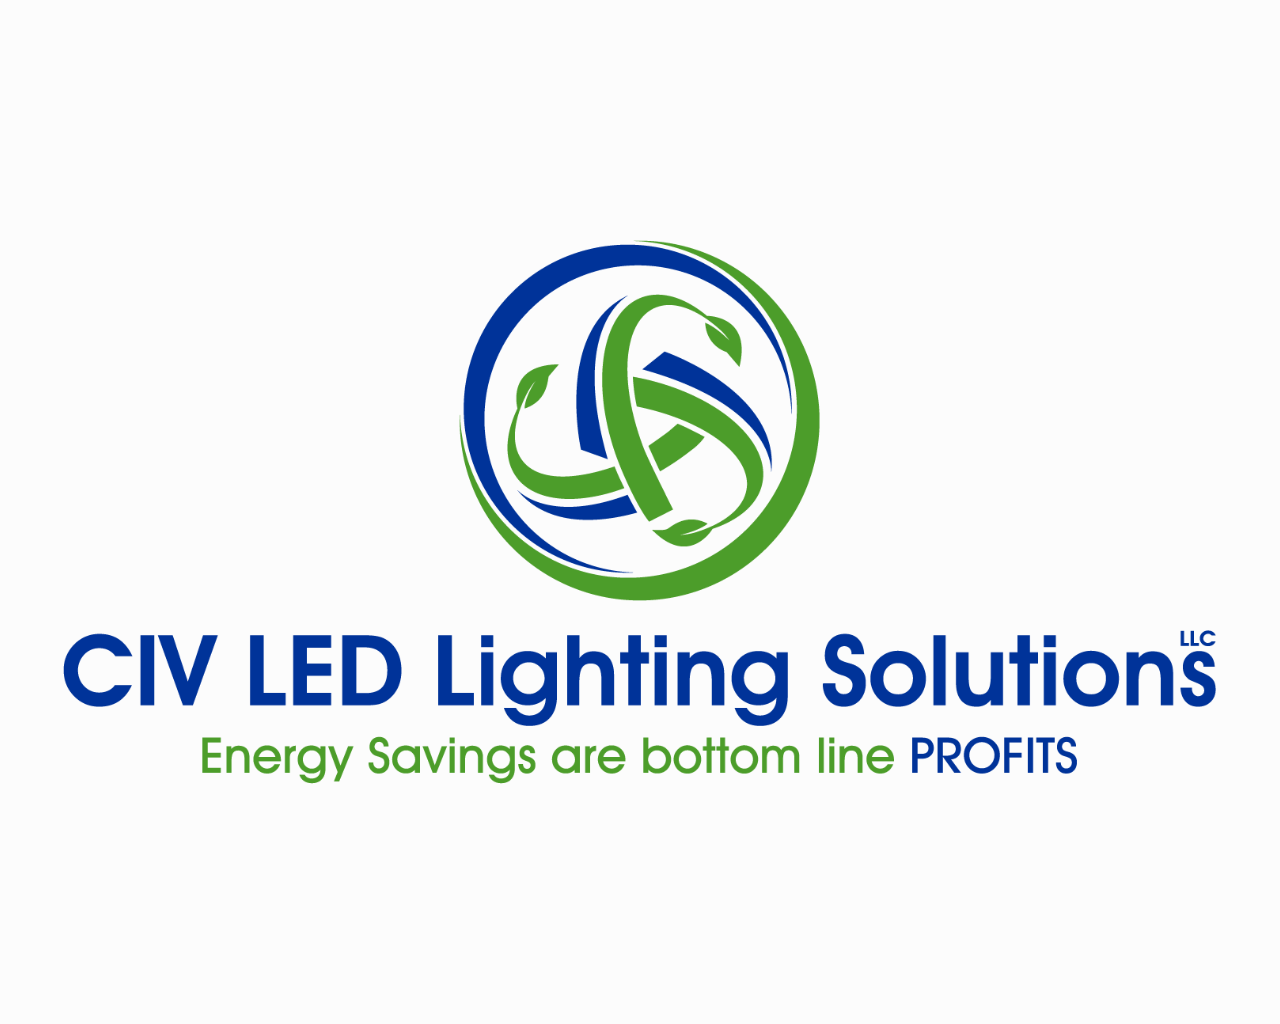 CIV LED Lighting Solutions, LLC